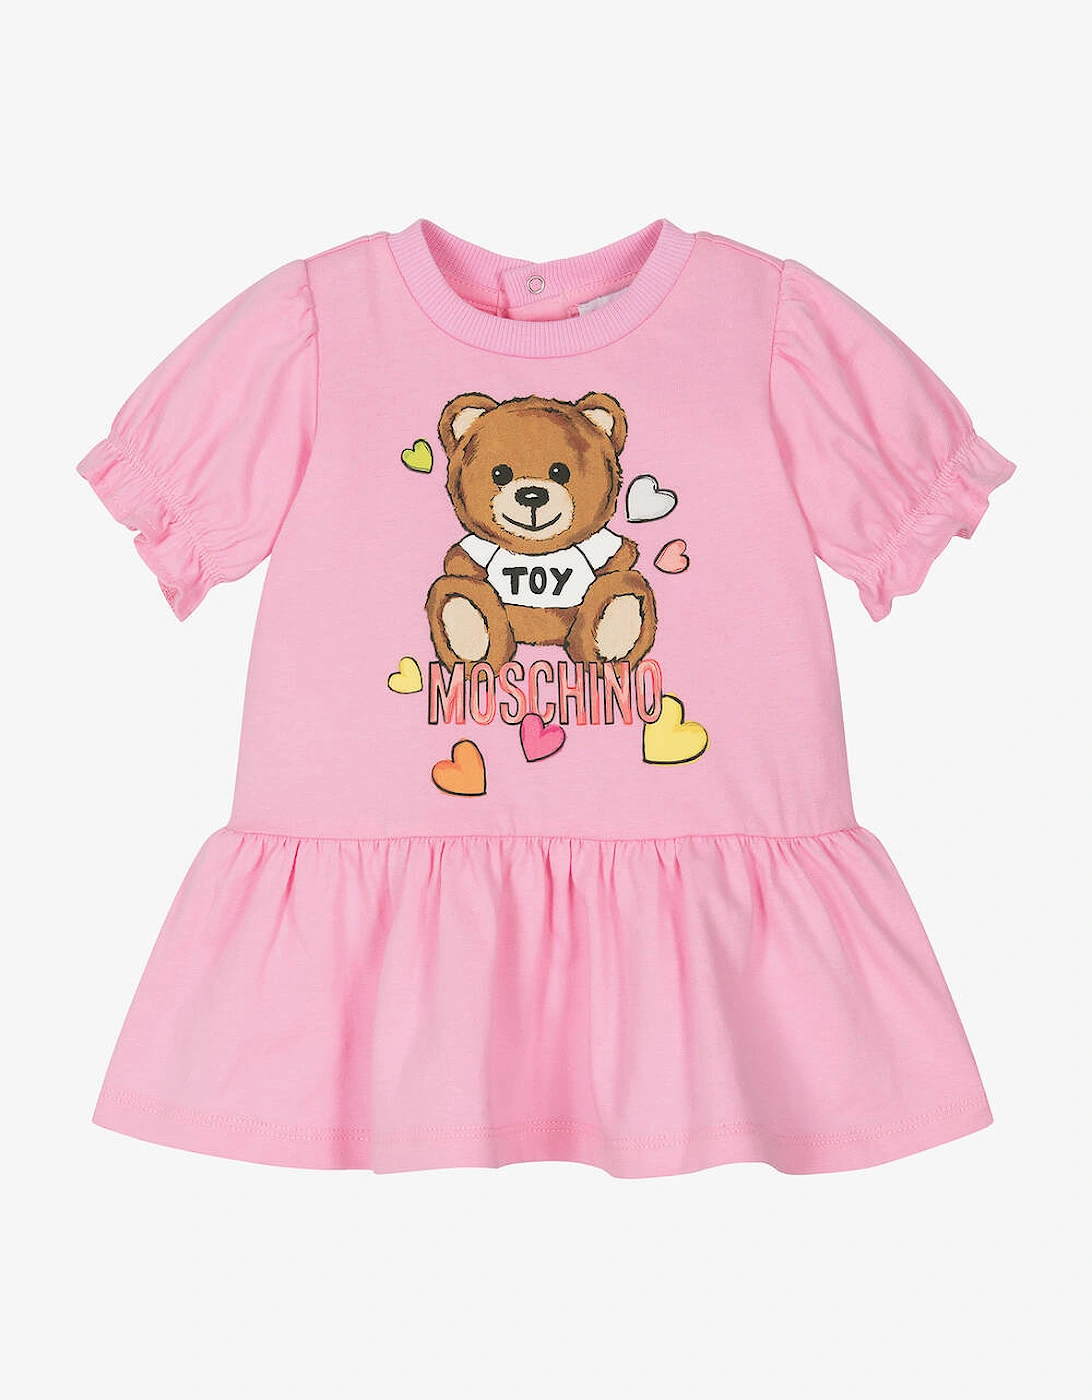 Baby/Toddler Pink Dress, 2 of 1